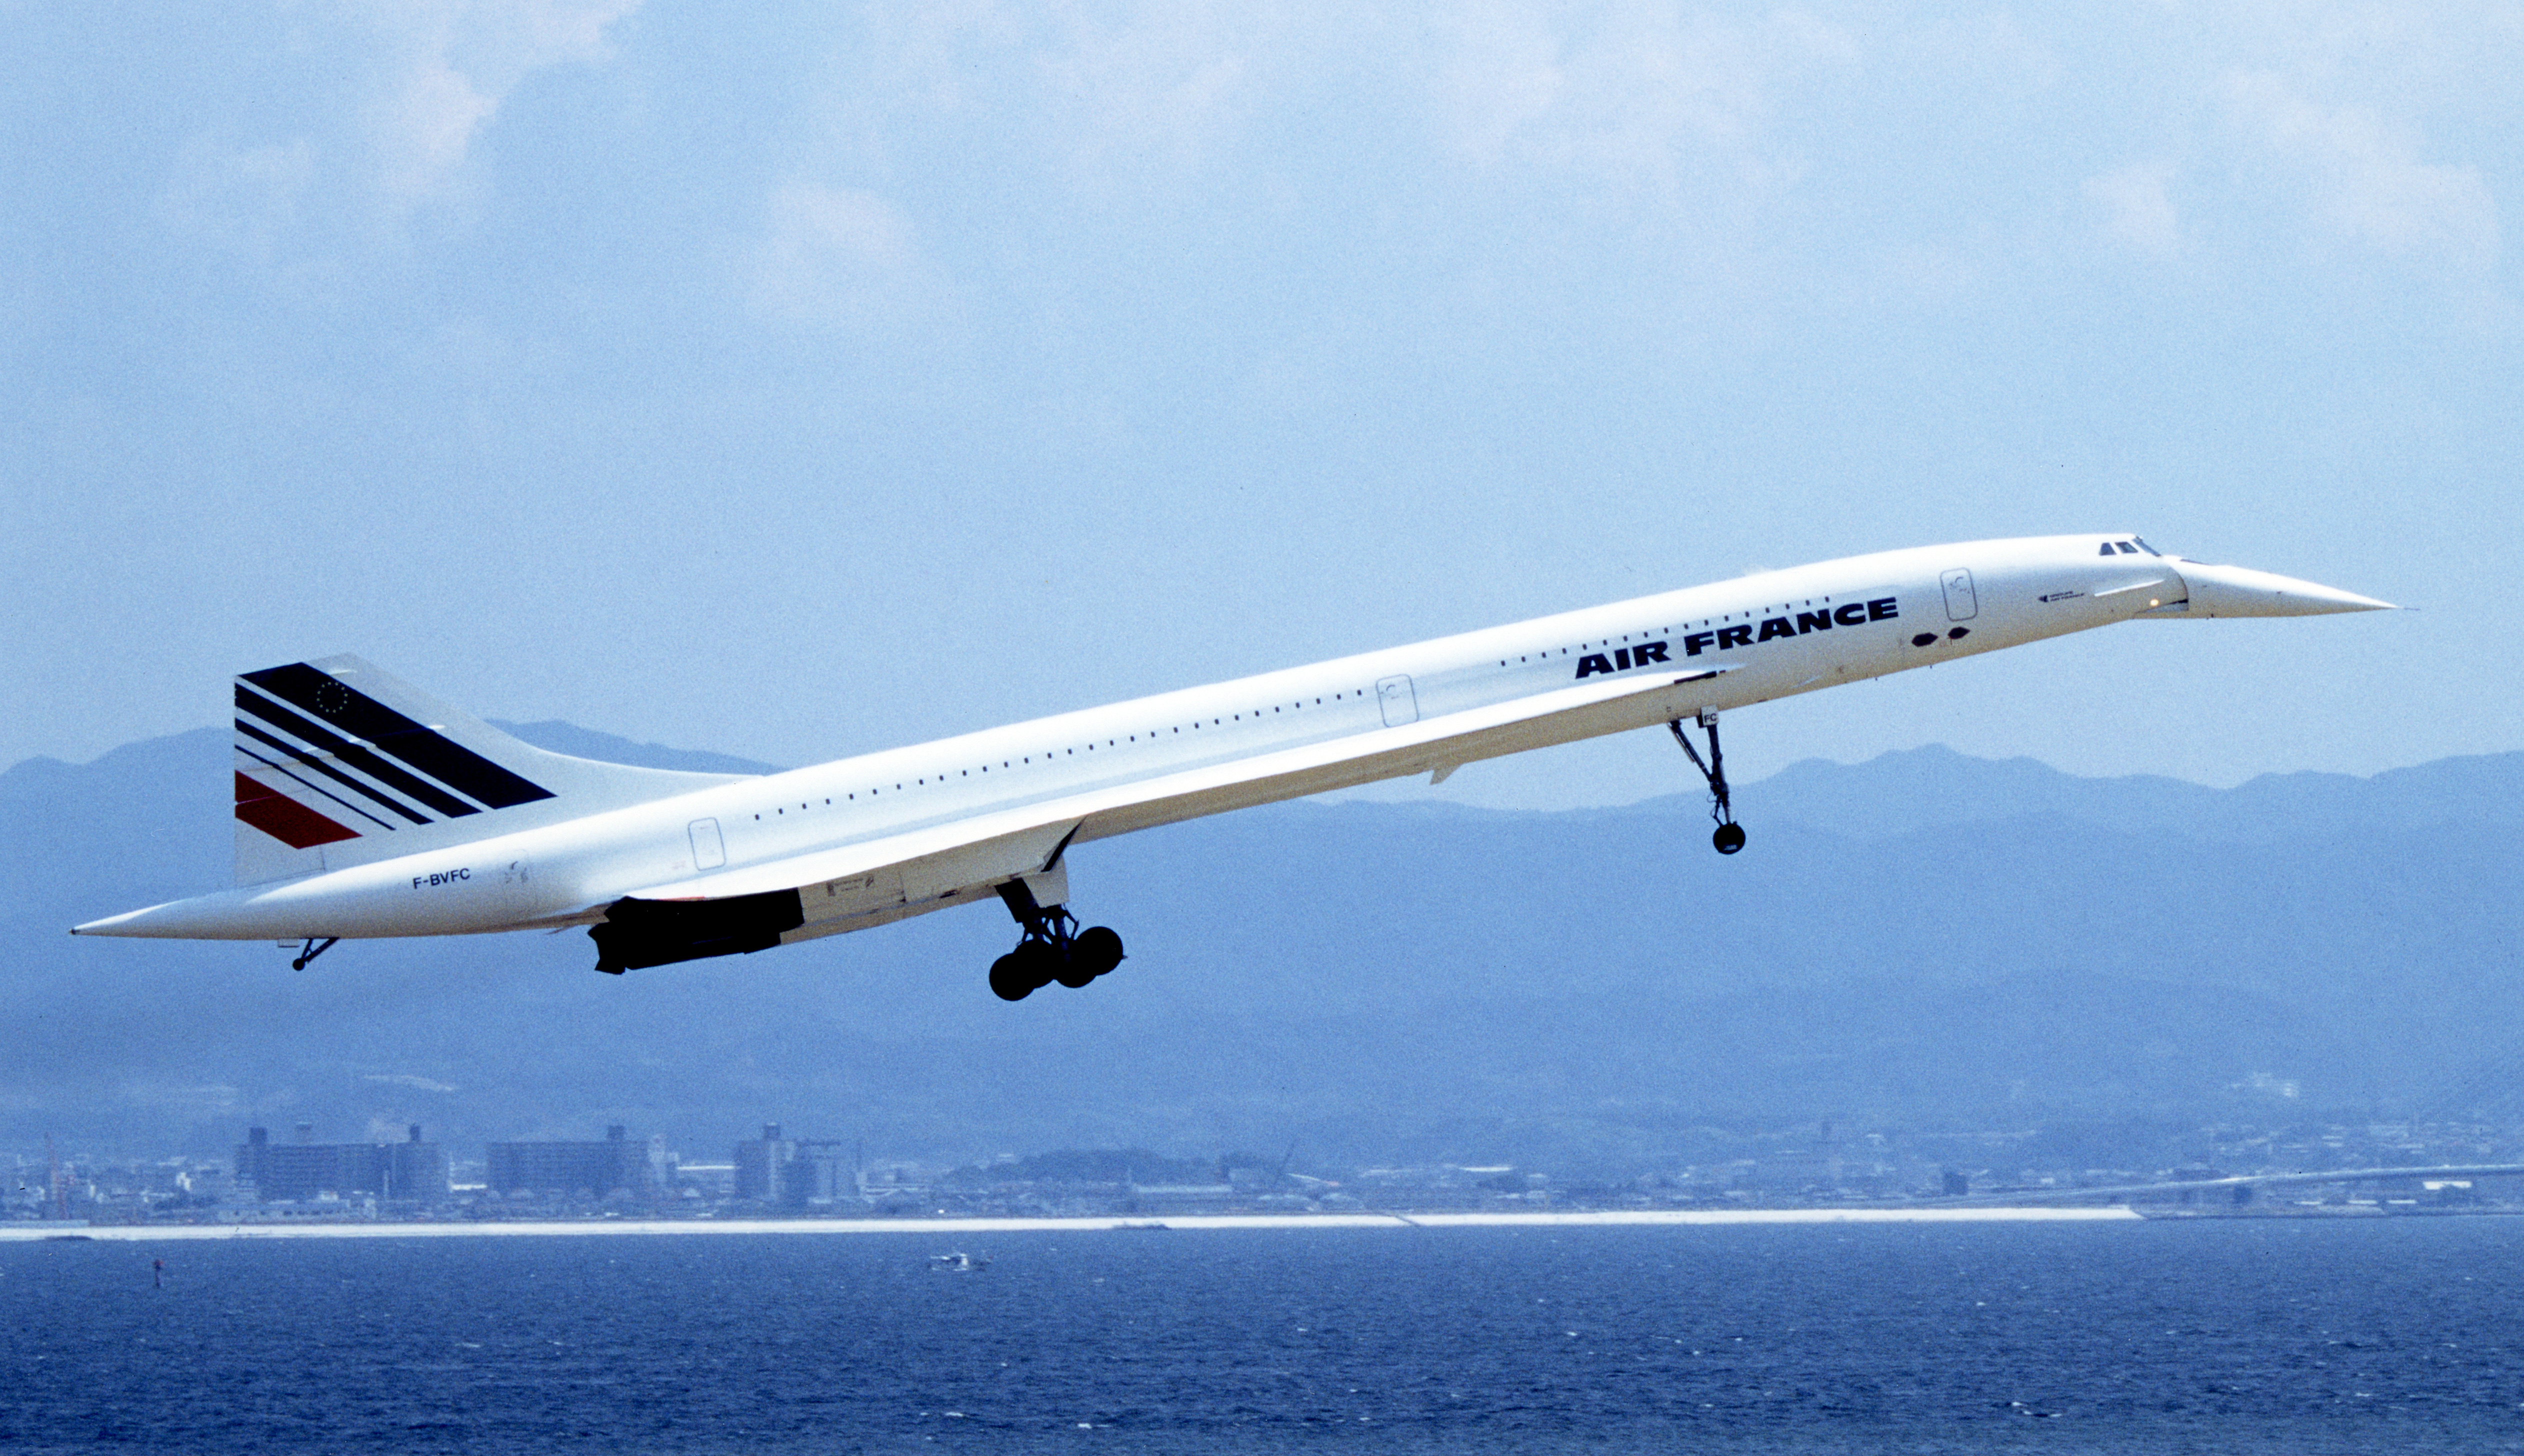 Concorde #10